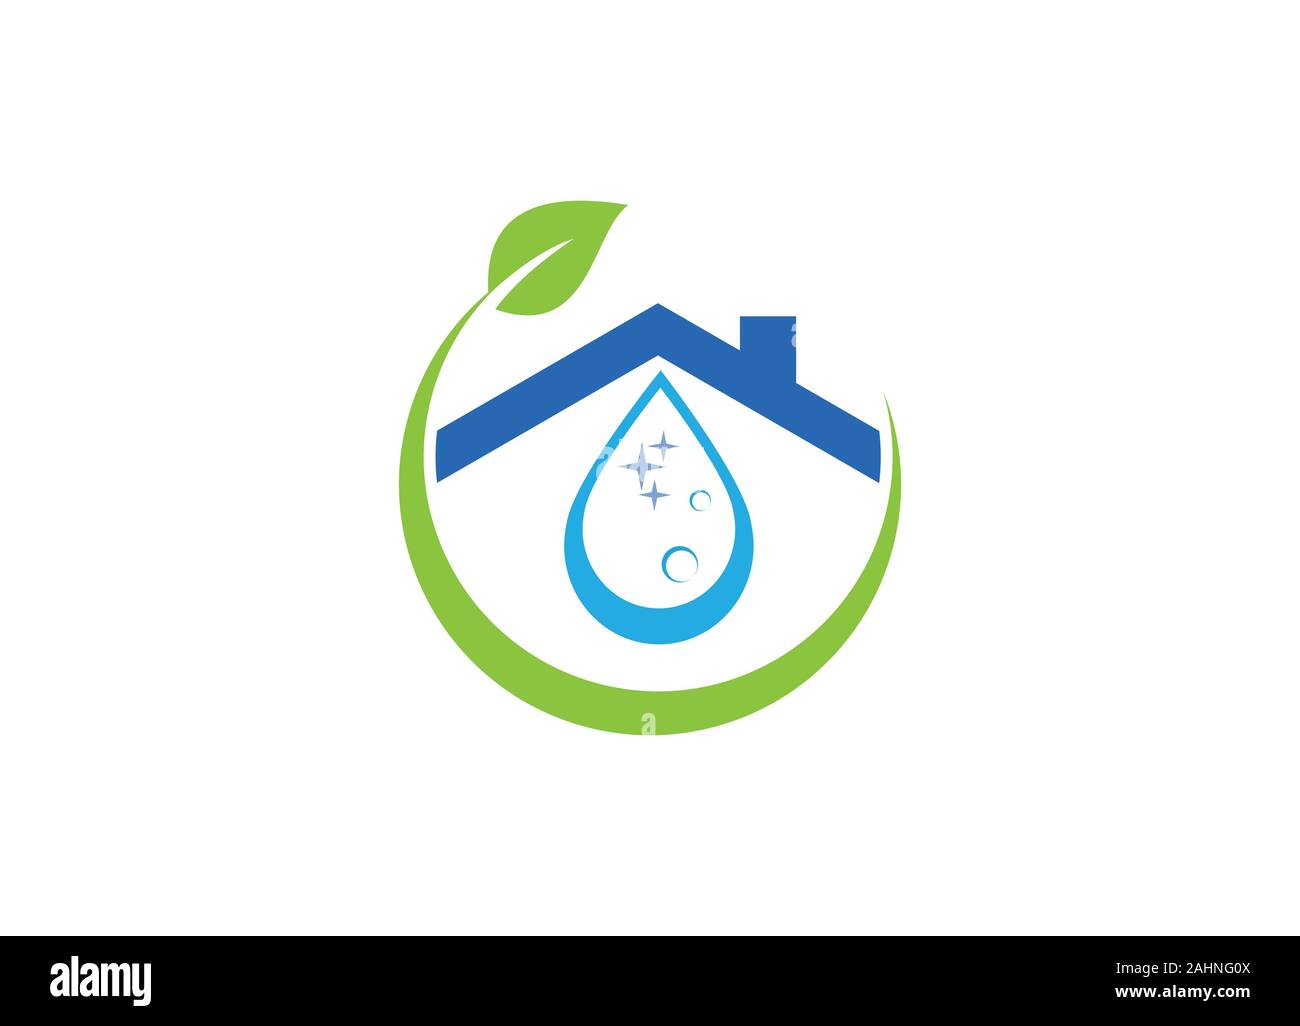 Reinigung Service Logo Design Vorlage, Reinigung und Wartung Logo Vorlage  Stock-Vektorgrafik - Alamy